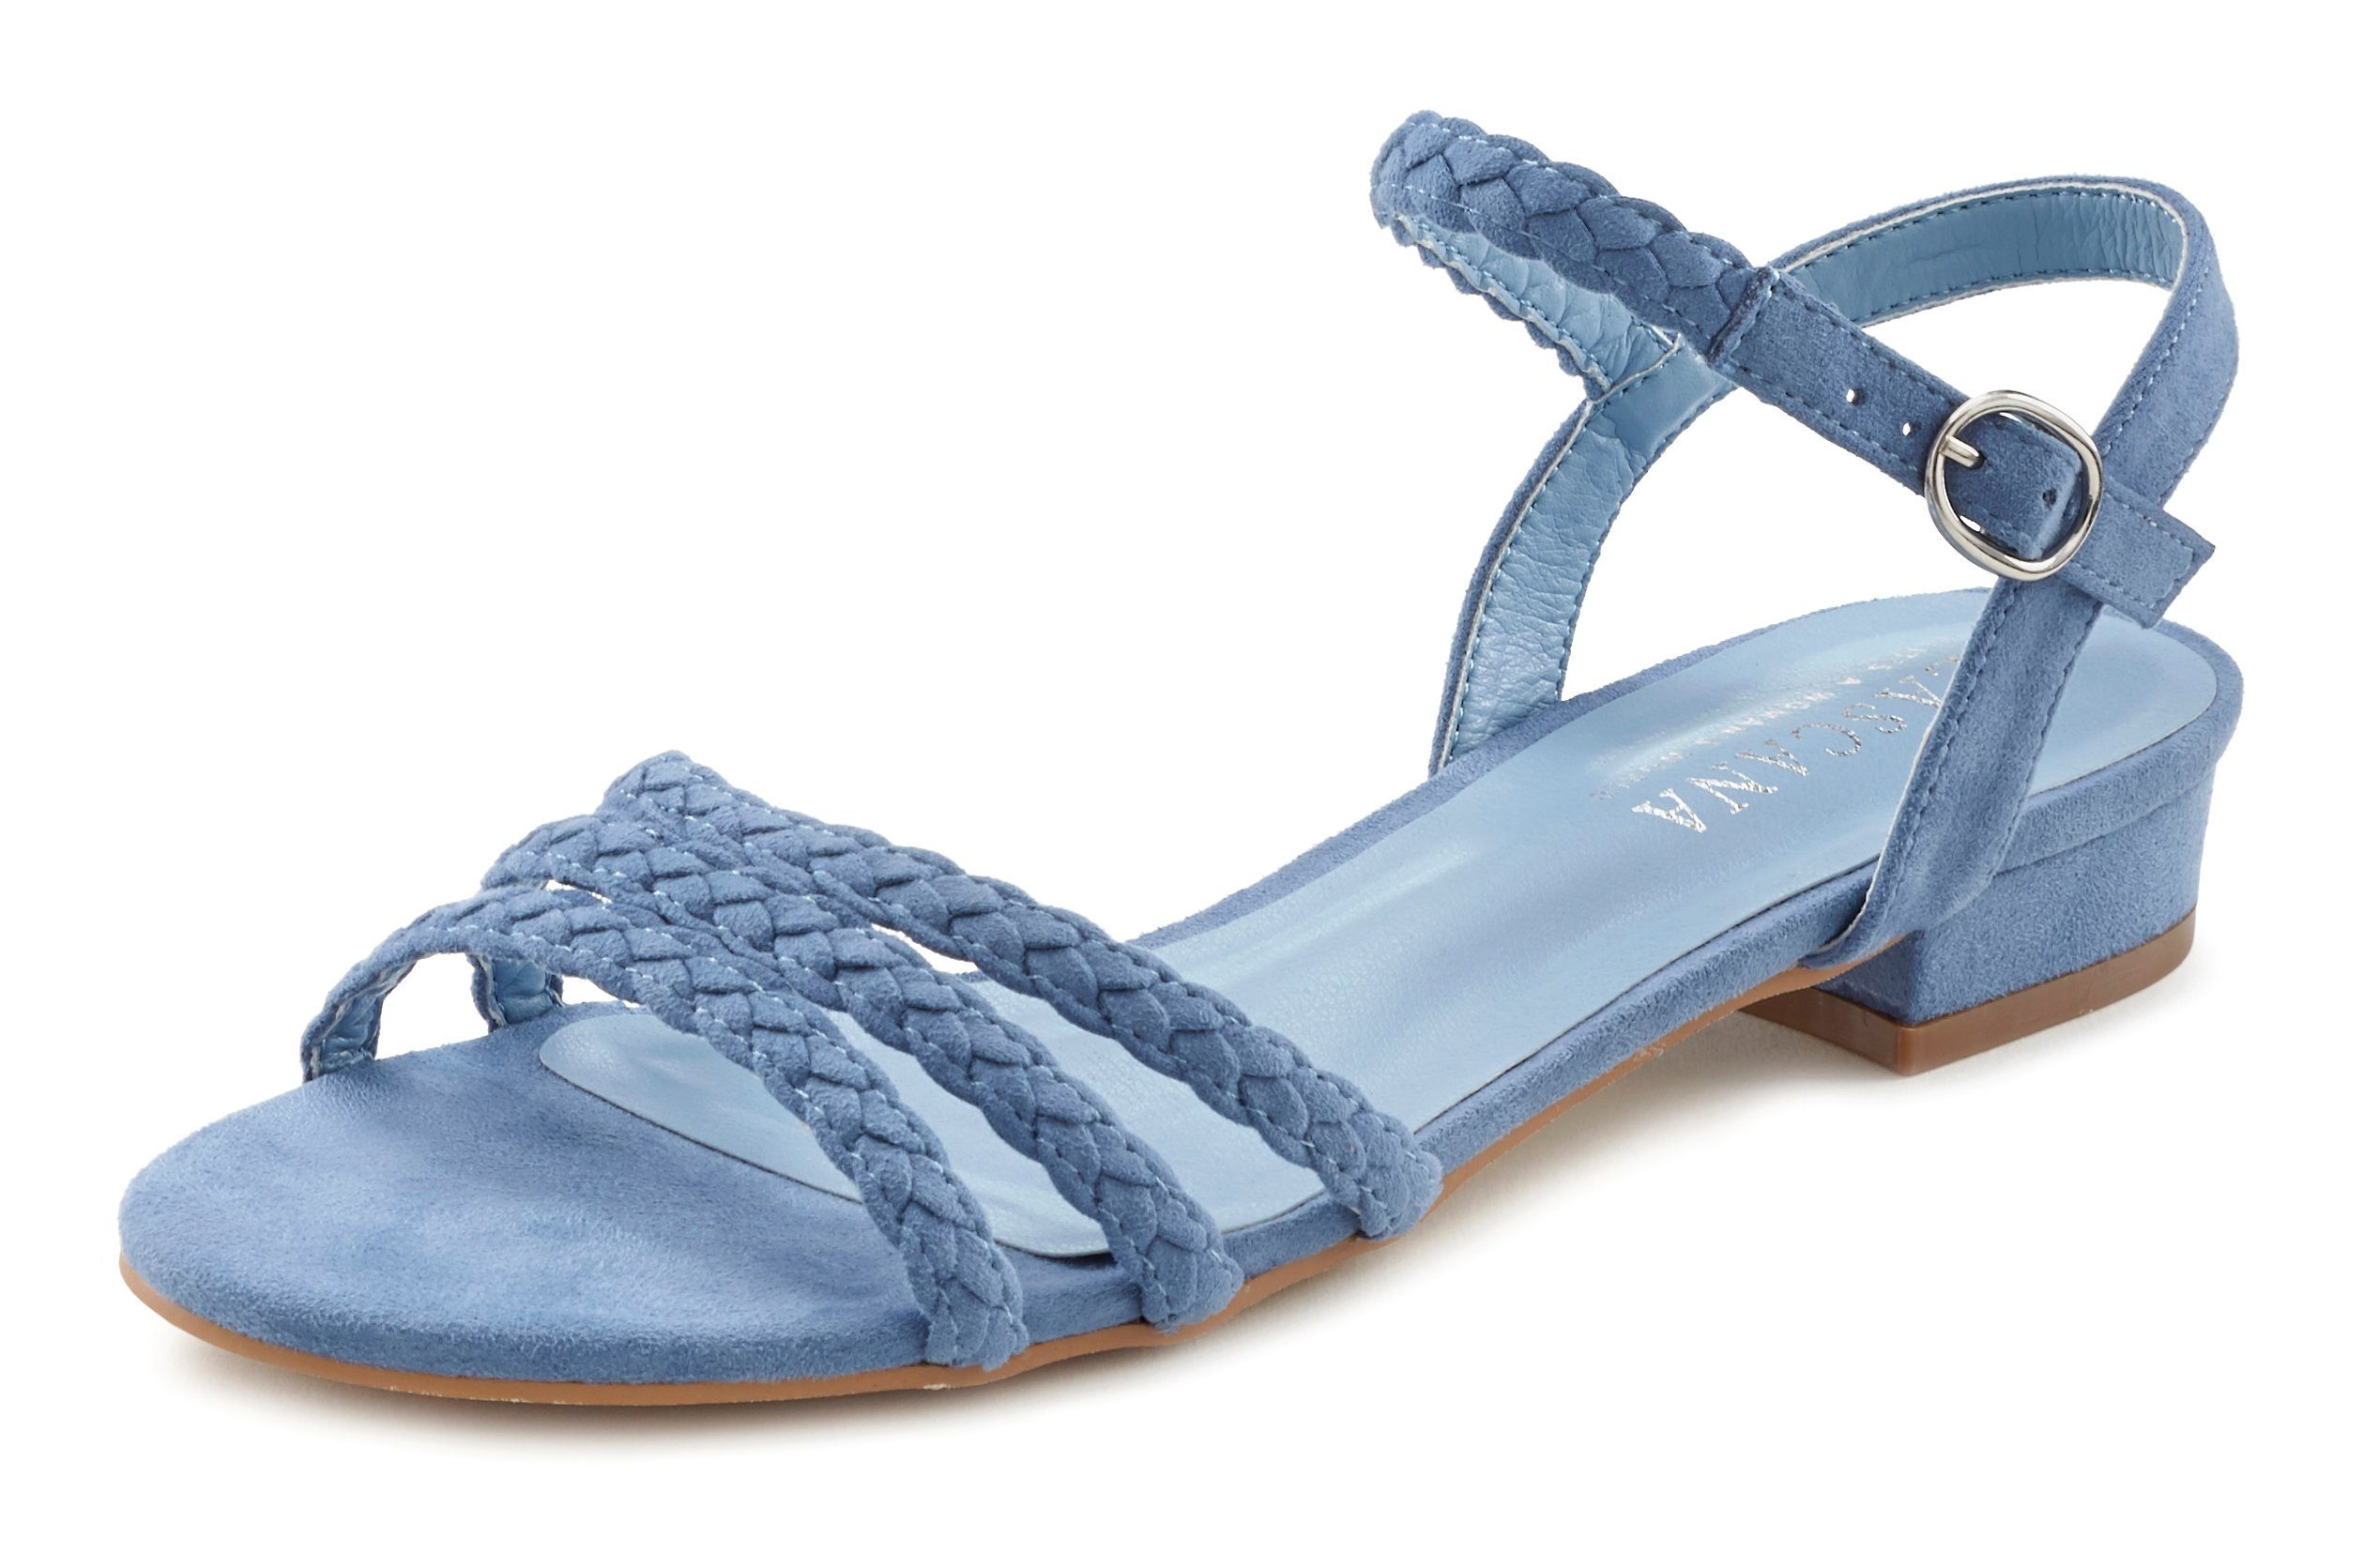 LASCANA hellblau Sandale VEGAN Riemchen geflochtenen mit Sandalette, Sommerschuh